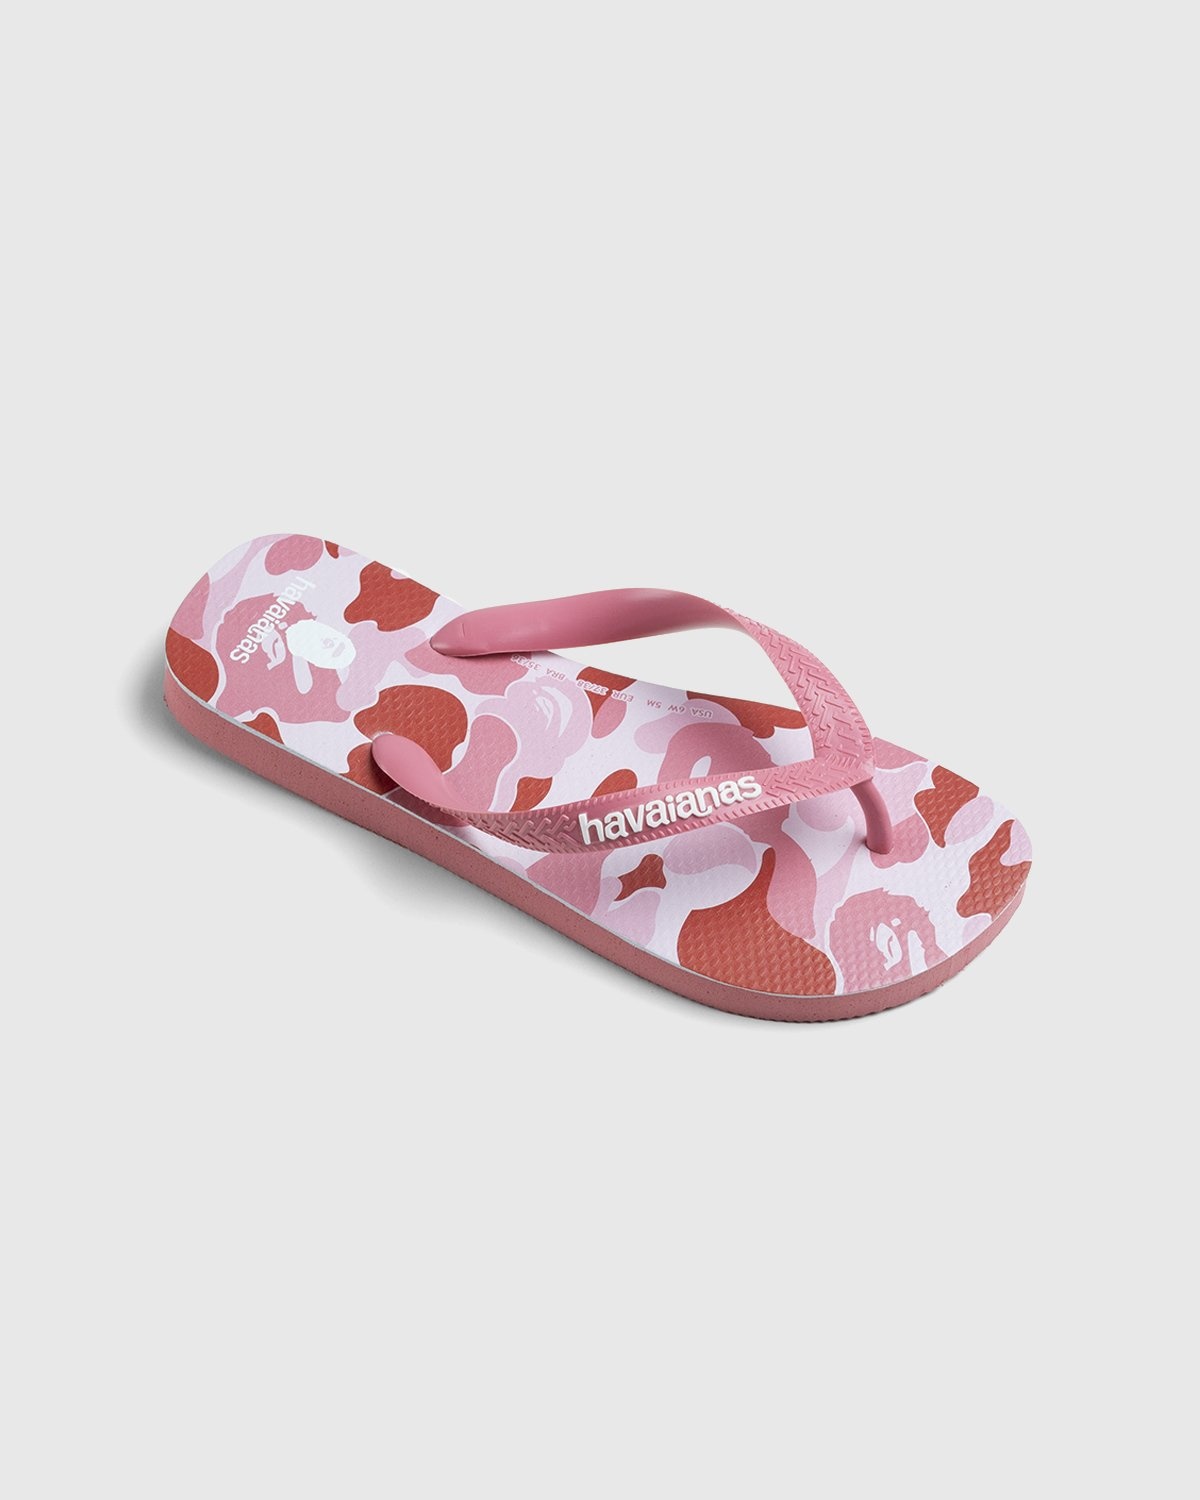 BAPE – Top Pink - Slides - Pink - Image 2